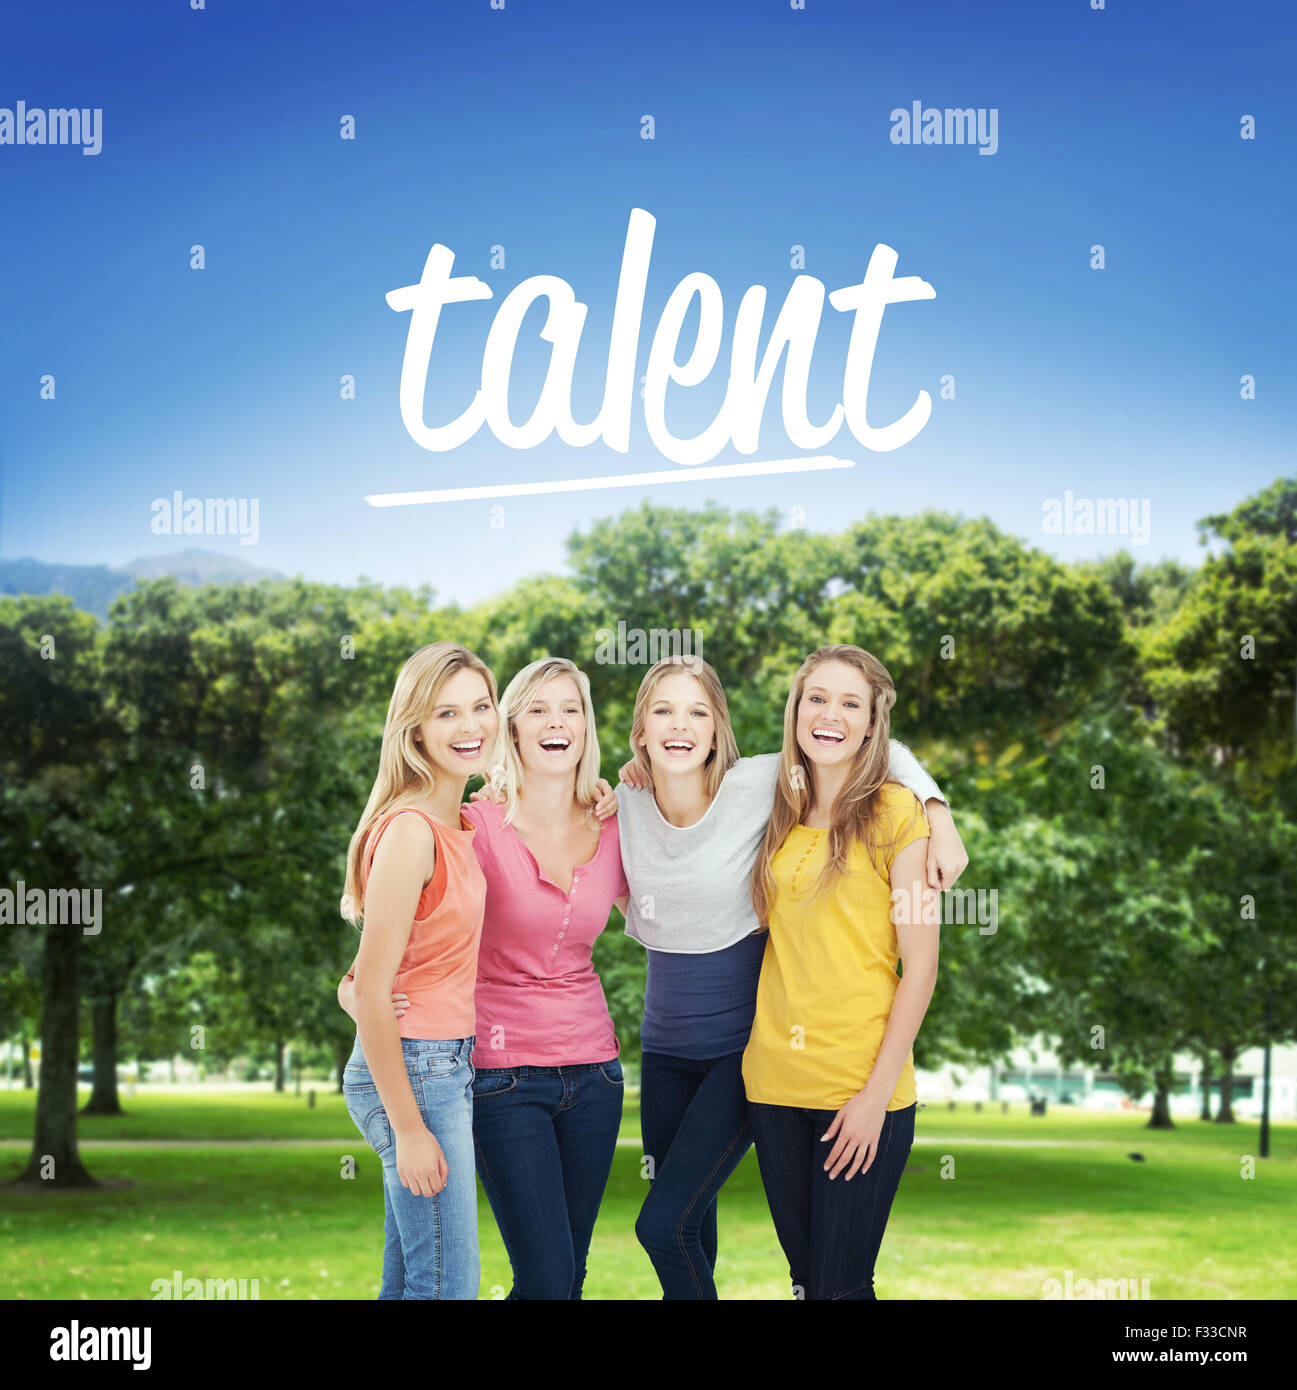 Talent against park Stock Photo